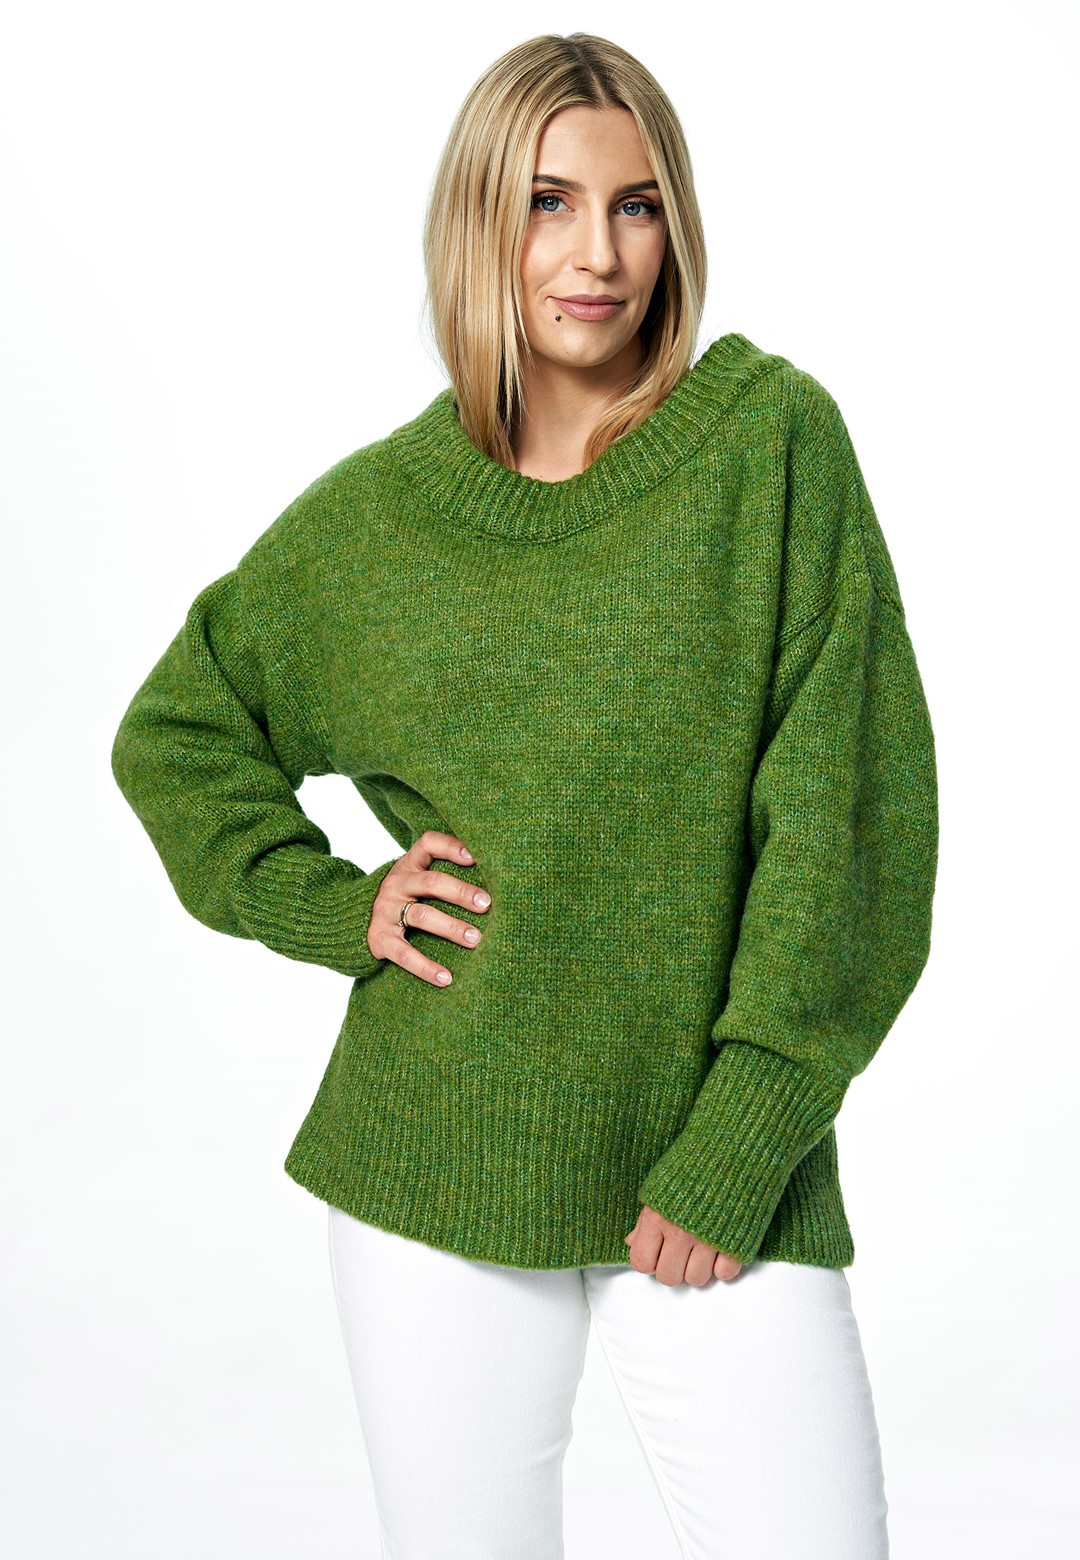 Figl Woman's Sweater M882